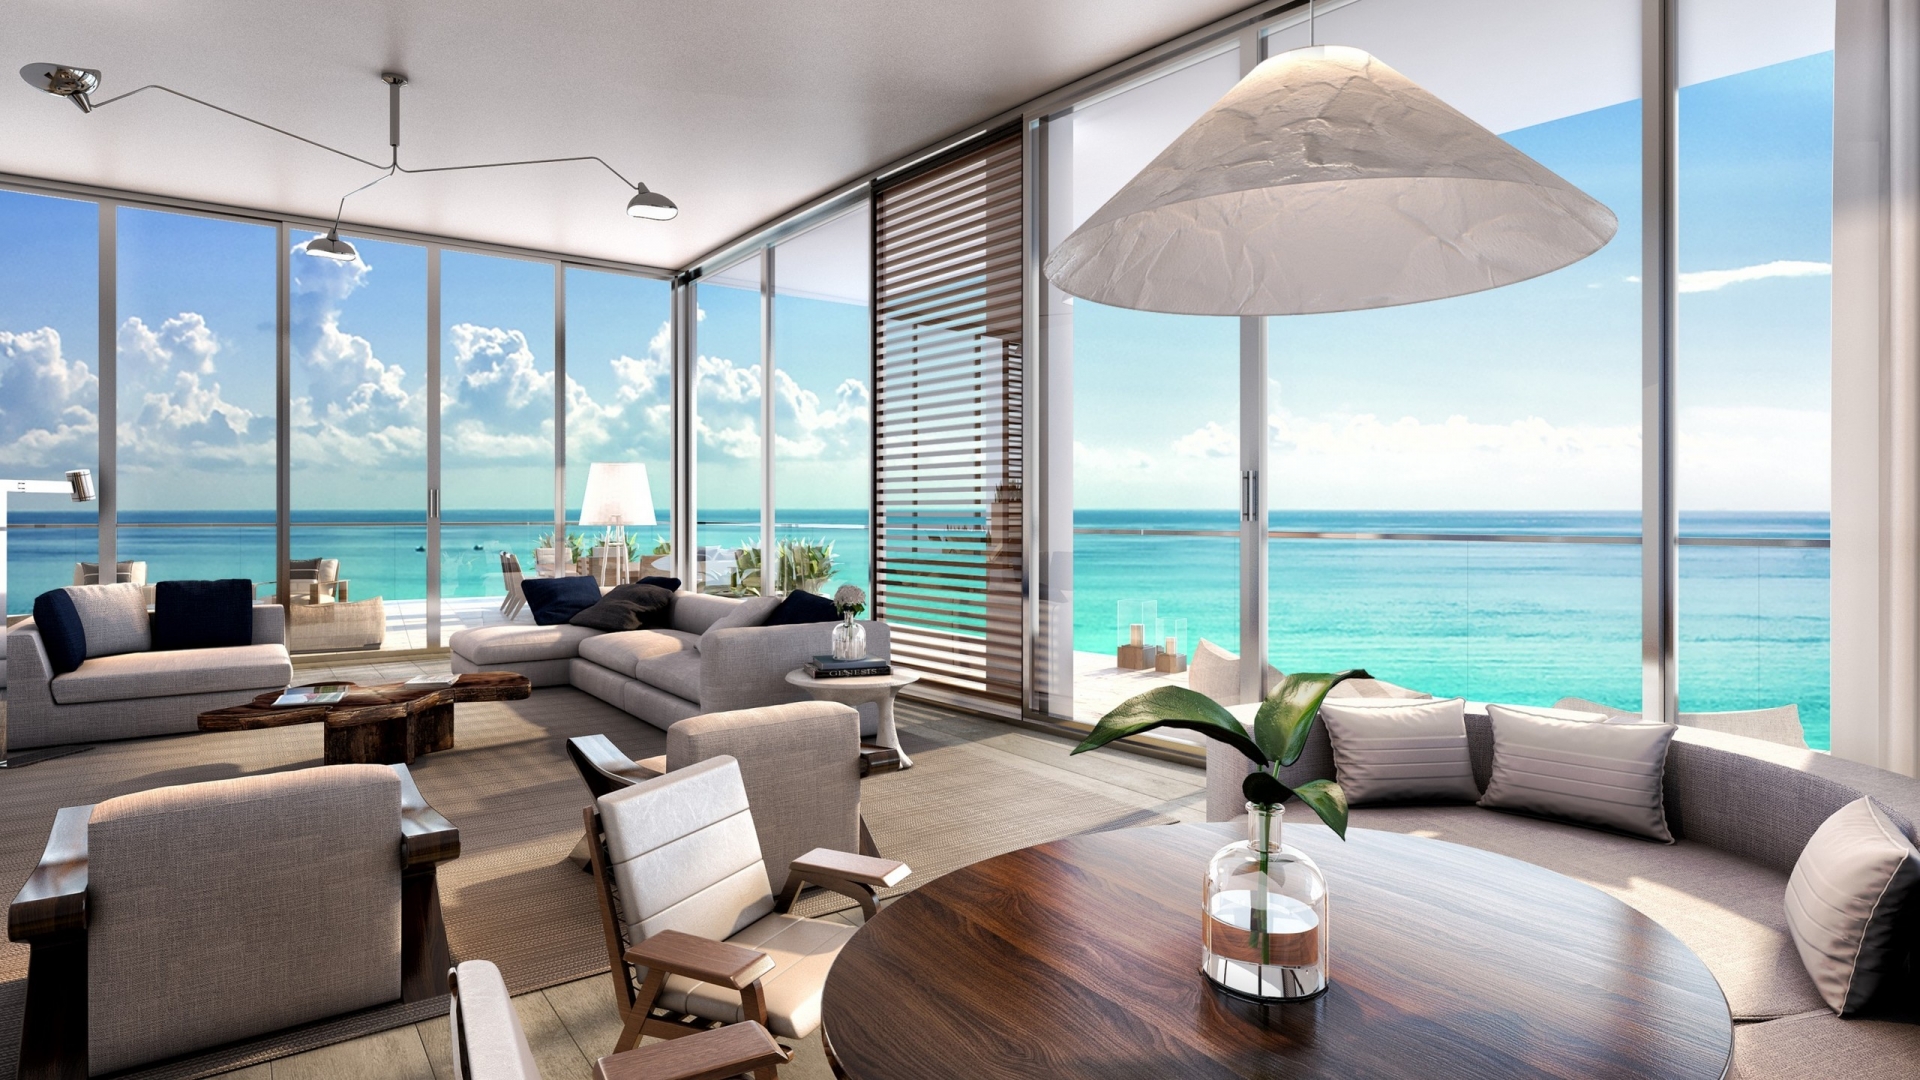 Living Room Beach Residences for 1920 x 1080 HDTV 1080p resolution